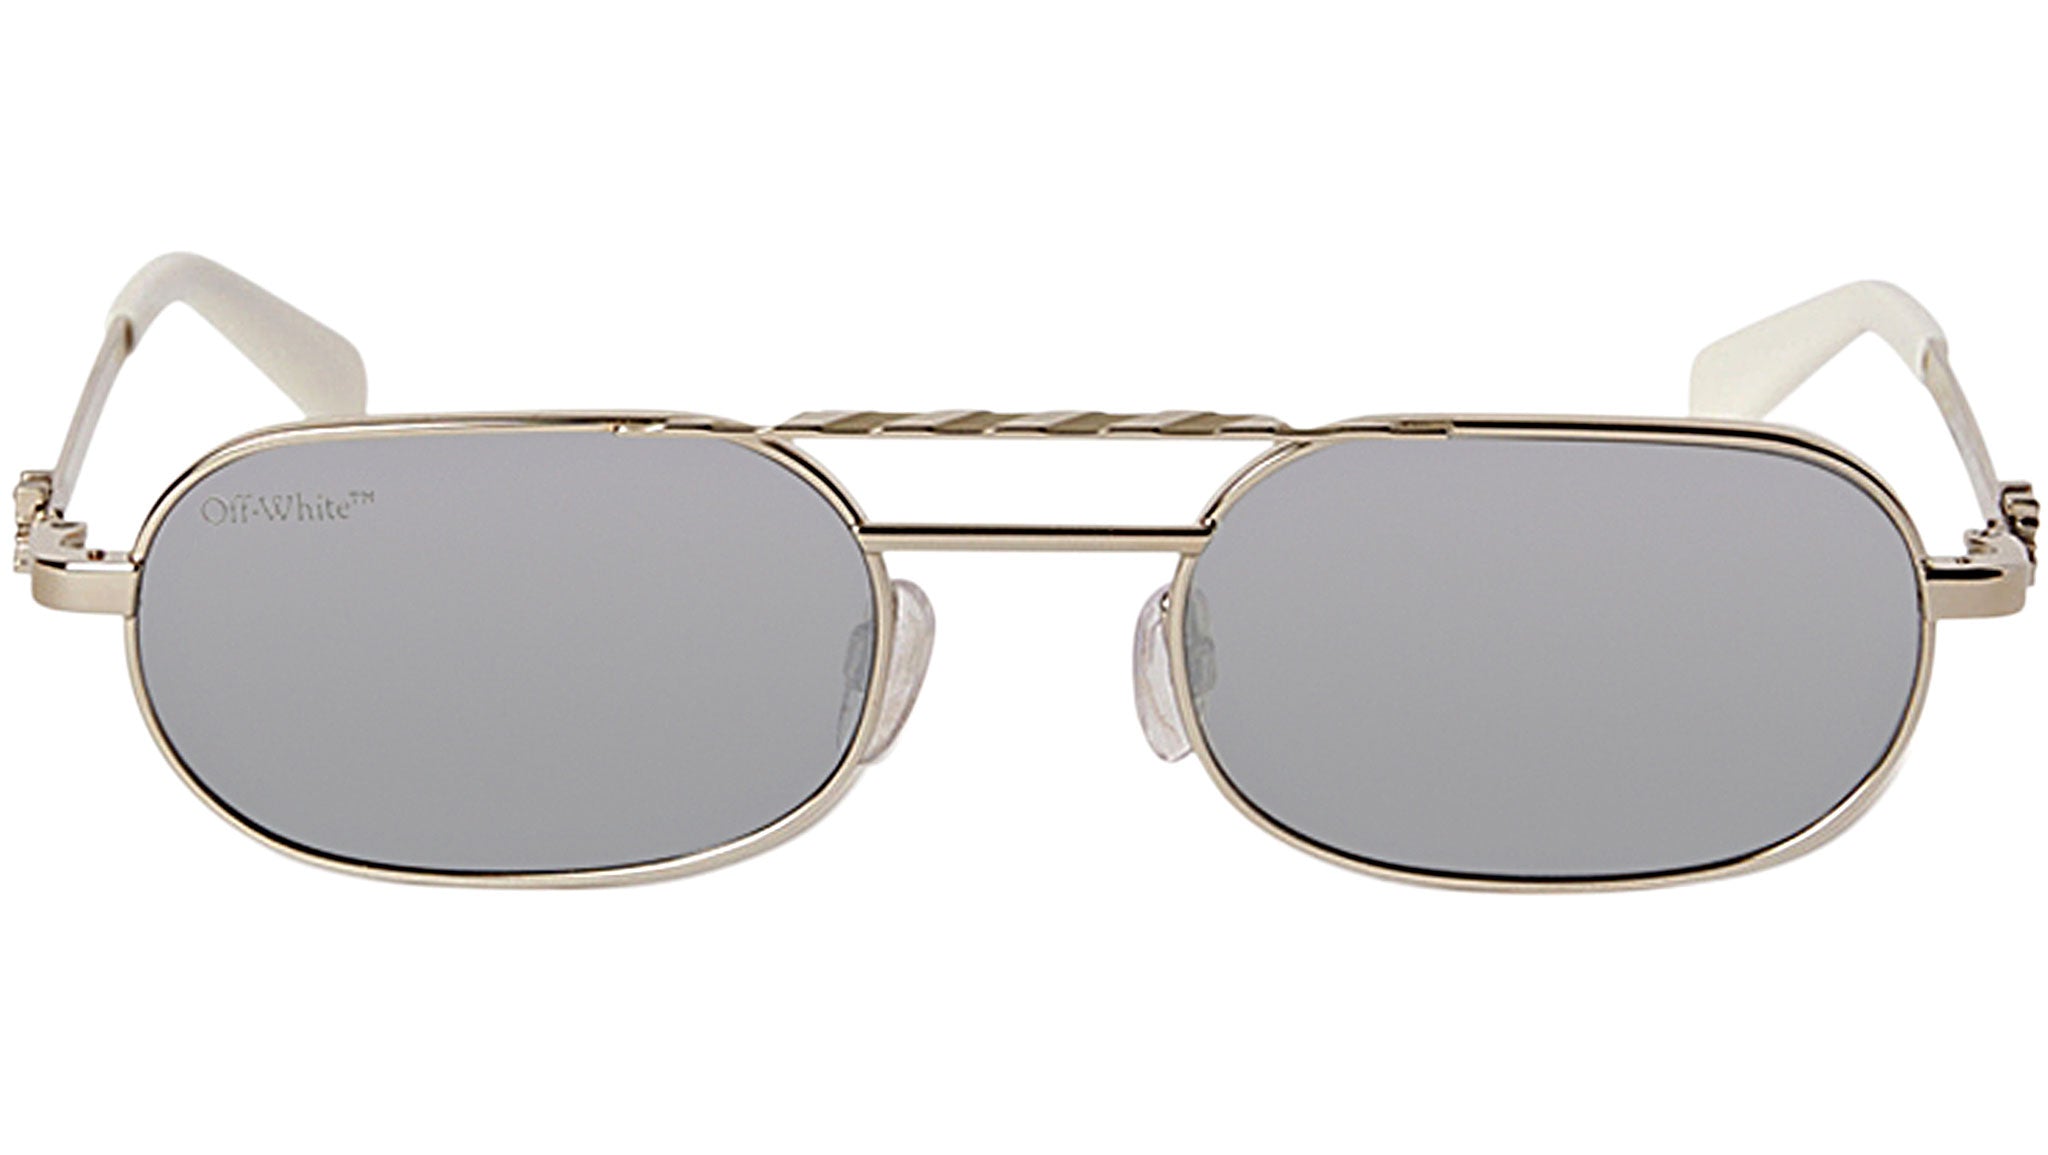 Mirror Sunglasses Baltimore Off-White Silver